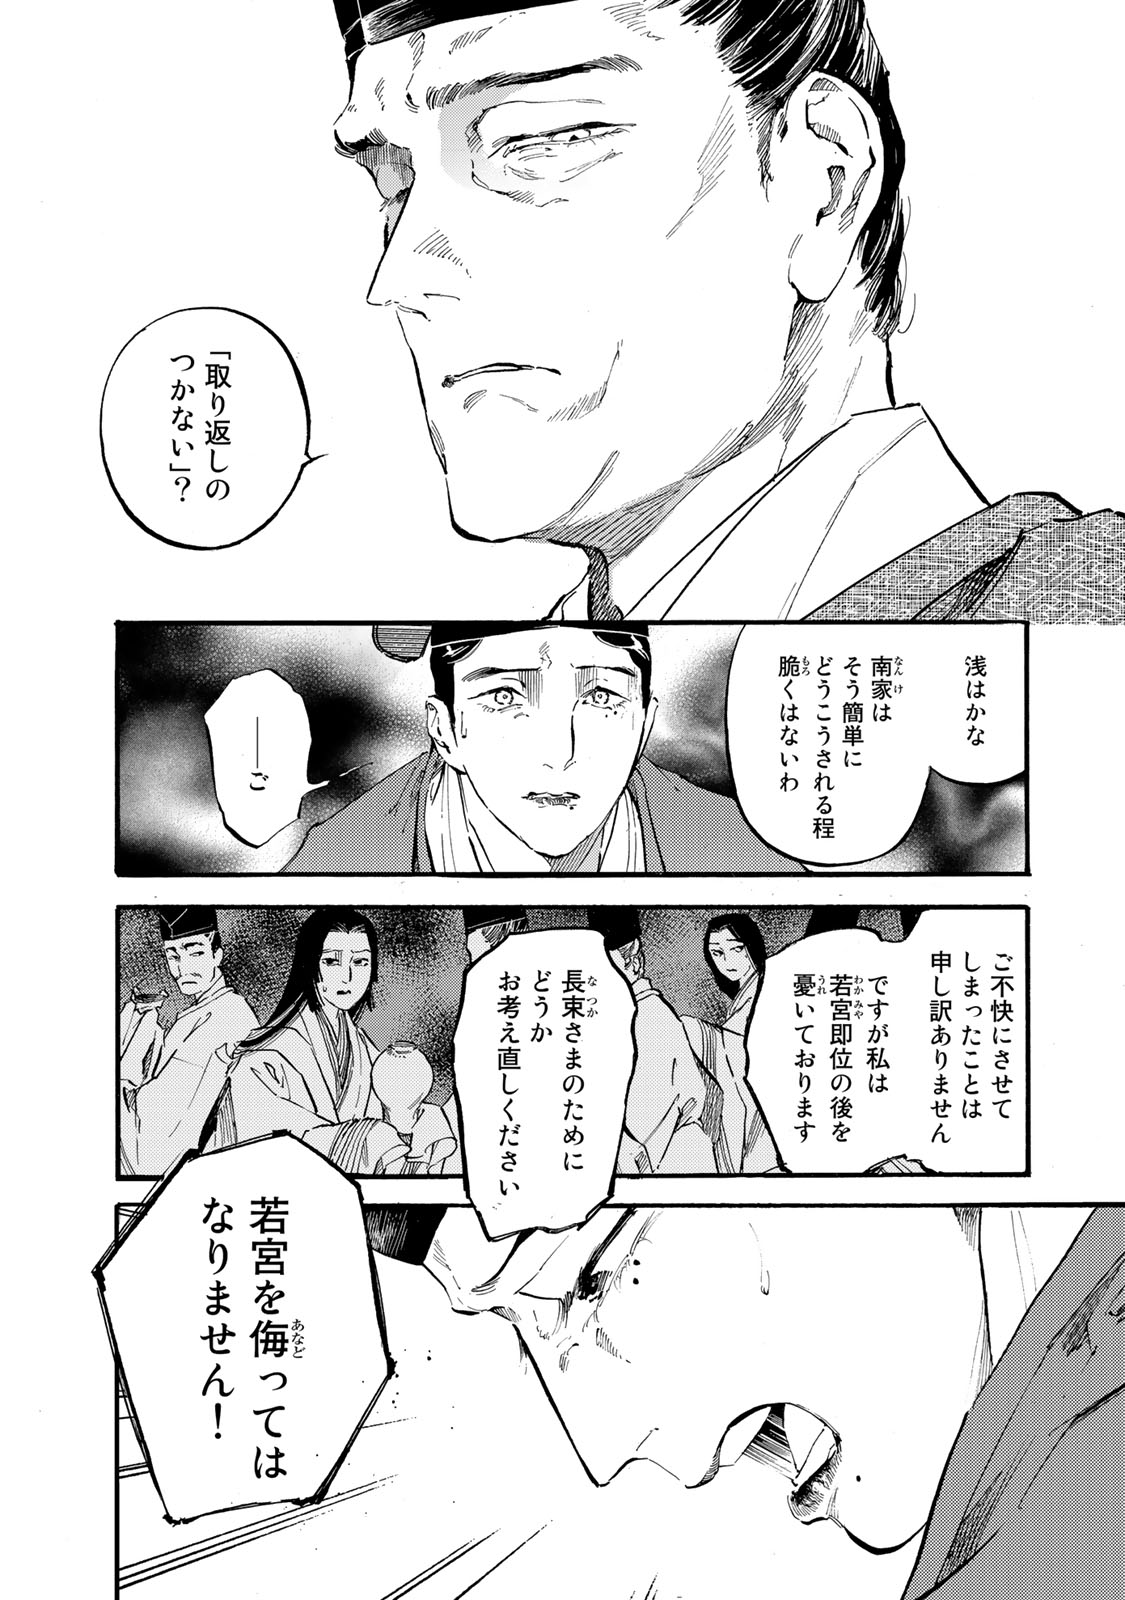 Karasu wa Aruji wo Erabanai - Chapter 38 - Page 6